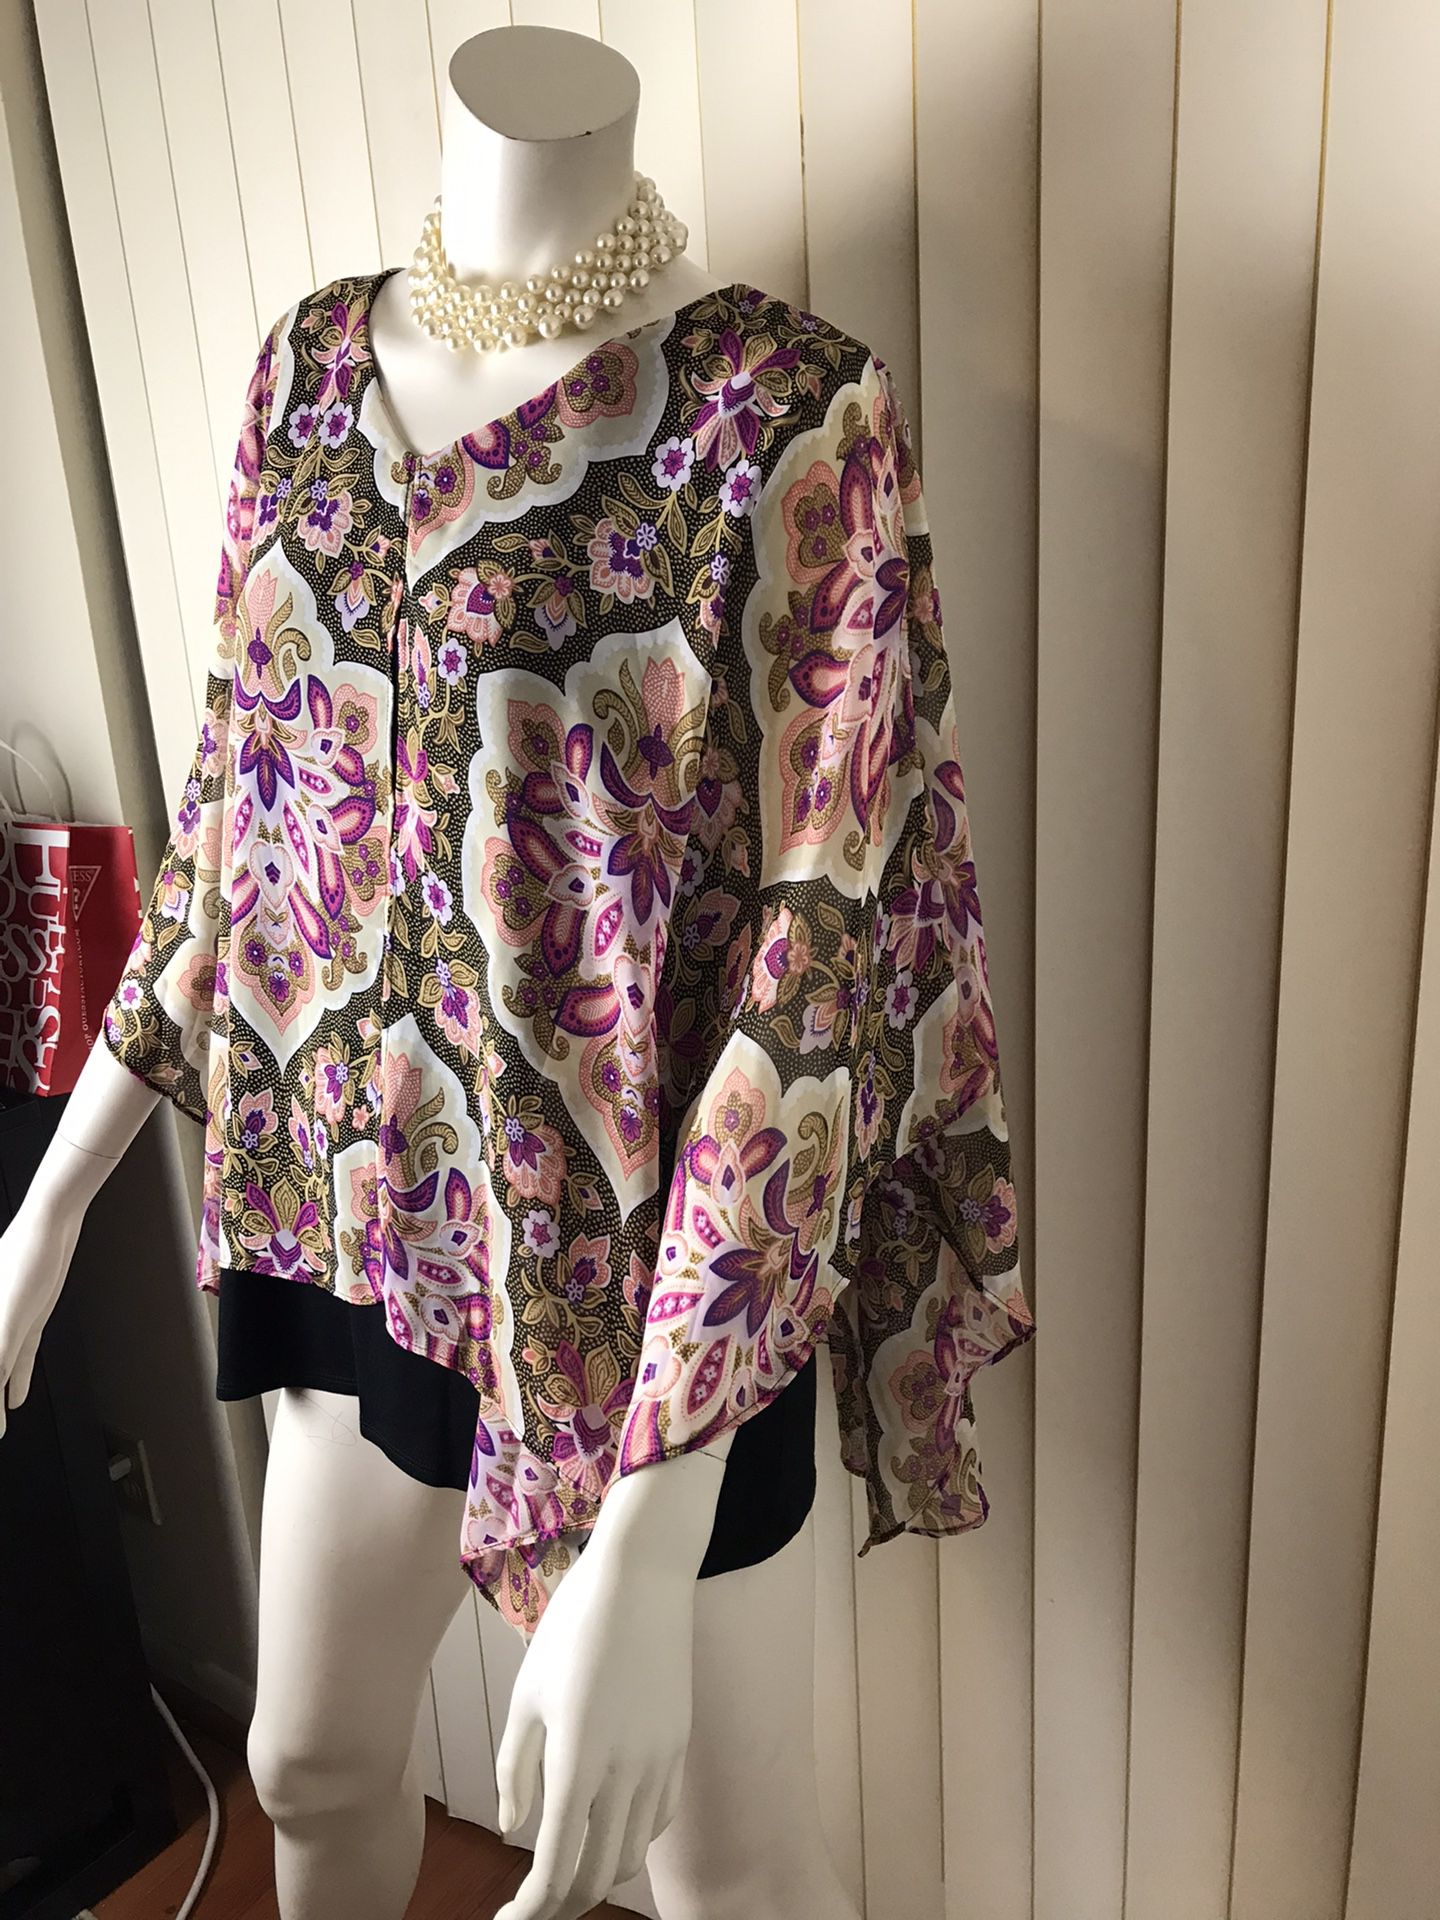 Women’s Chiffon Top/poncho/blouse/size XL